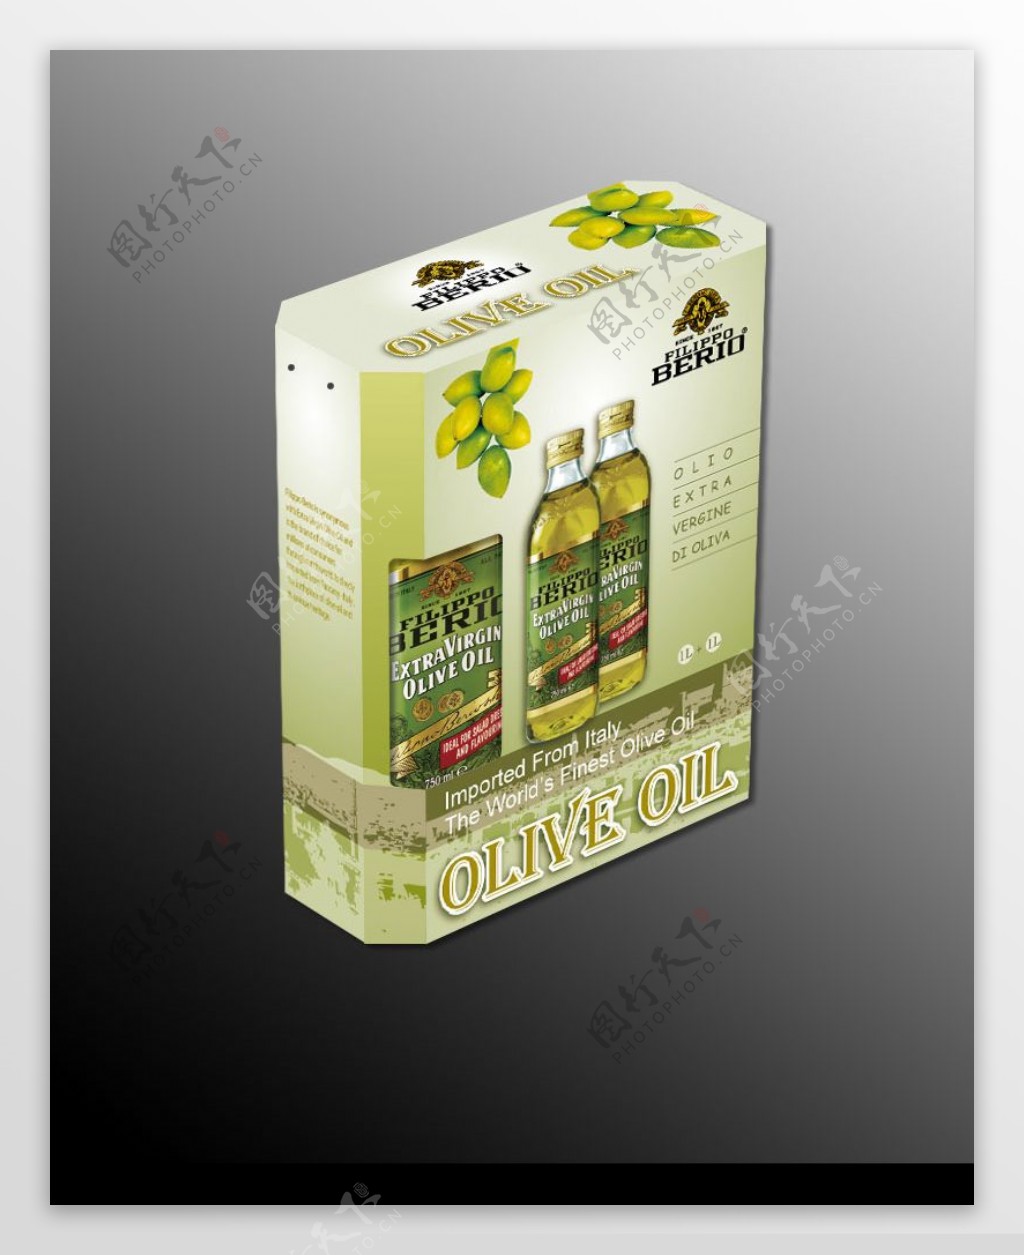 橄榄油包装设计图片